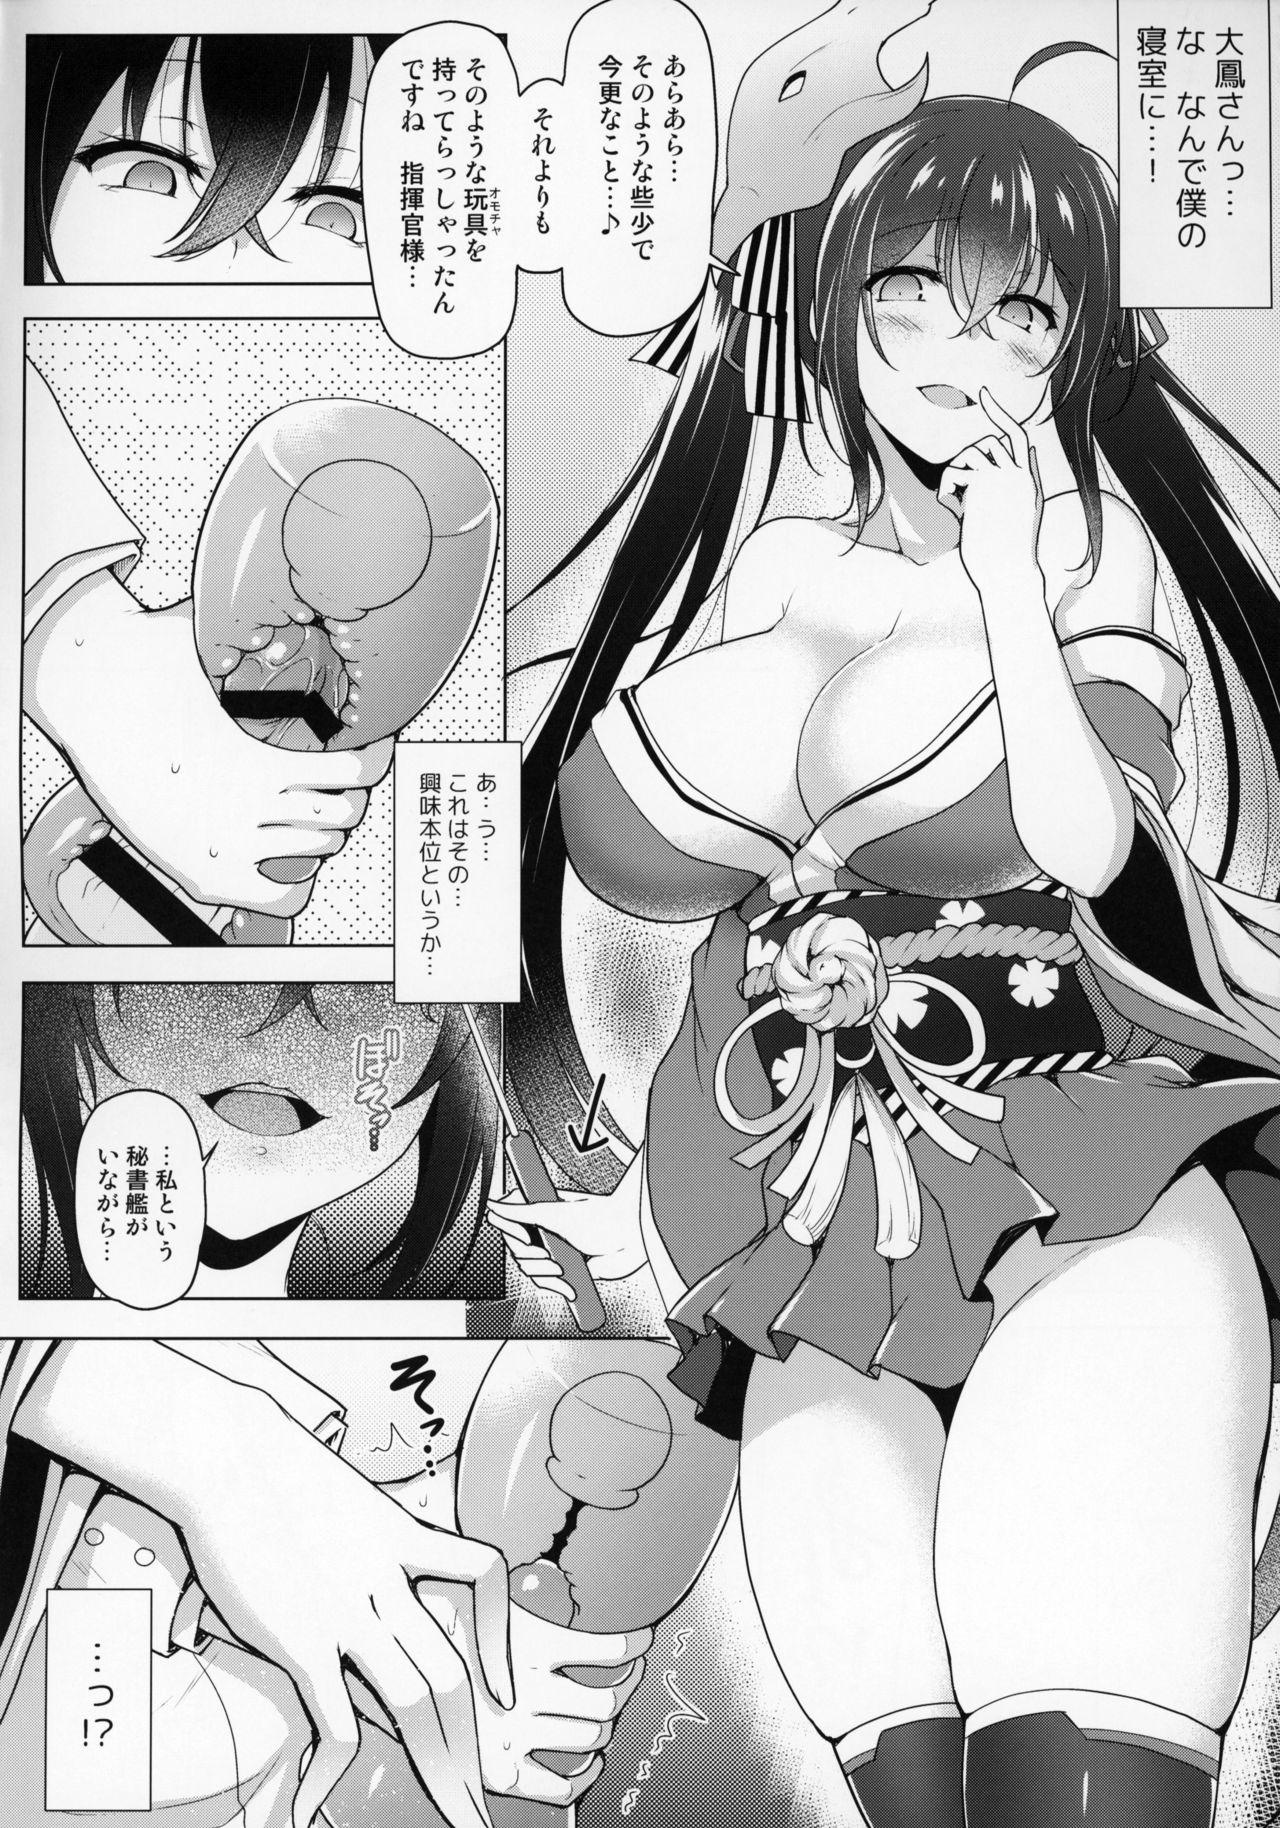 Orgia Kochira Taihou 03 - Azur lane Bikini - Page 5